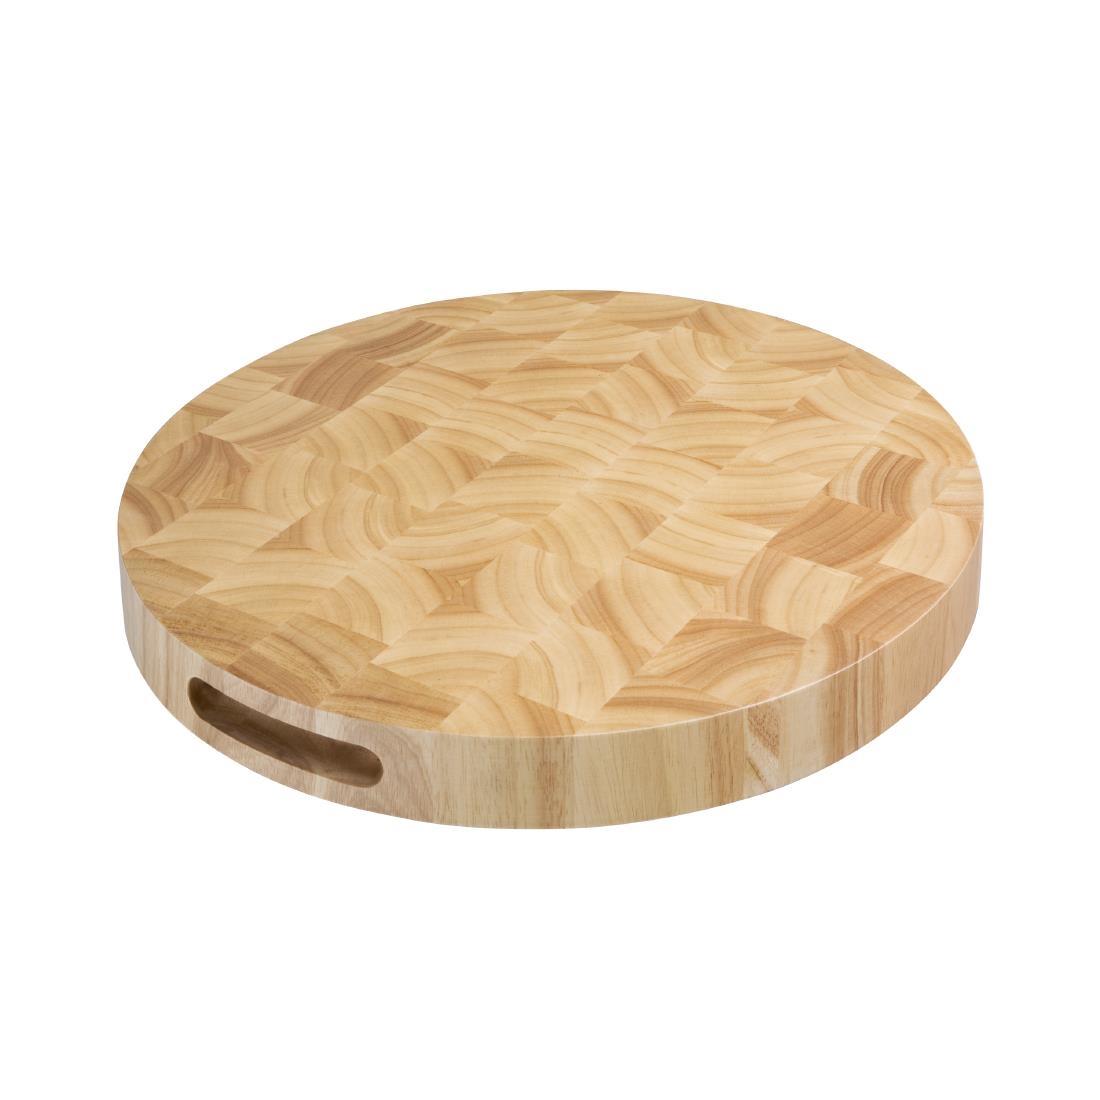 Vogue Round Wooden Chopping Board - C488  - 1